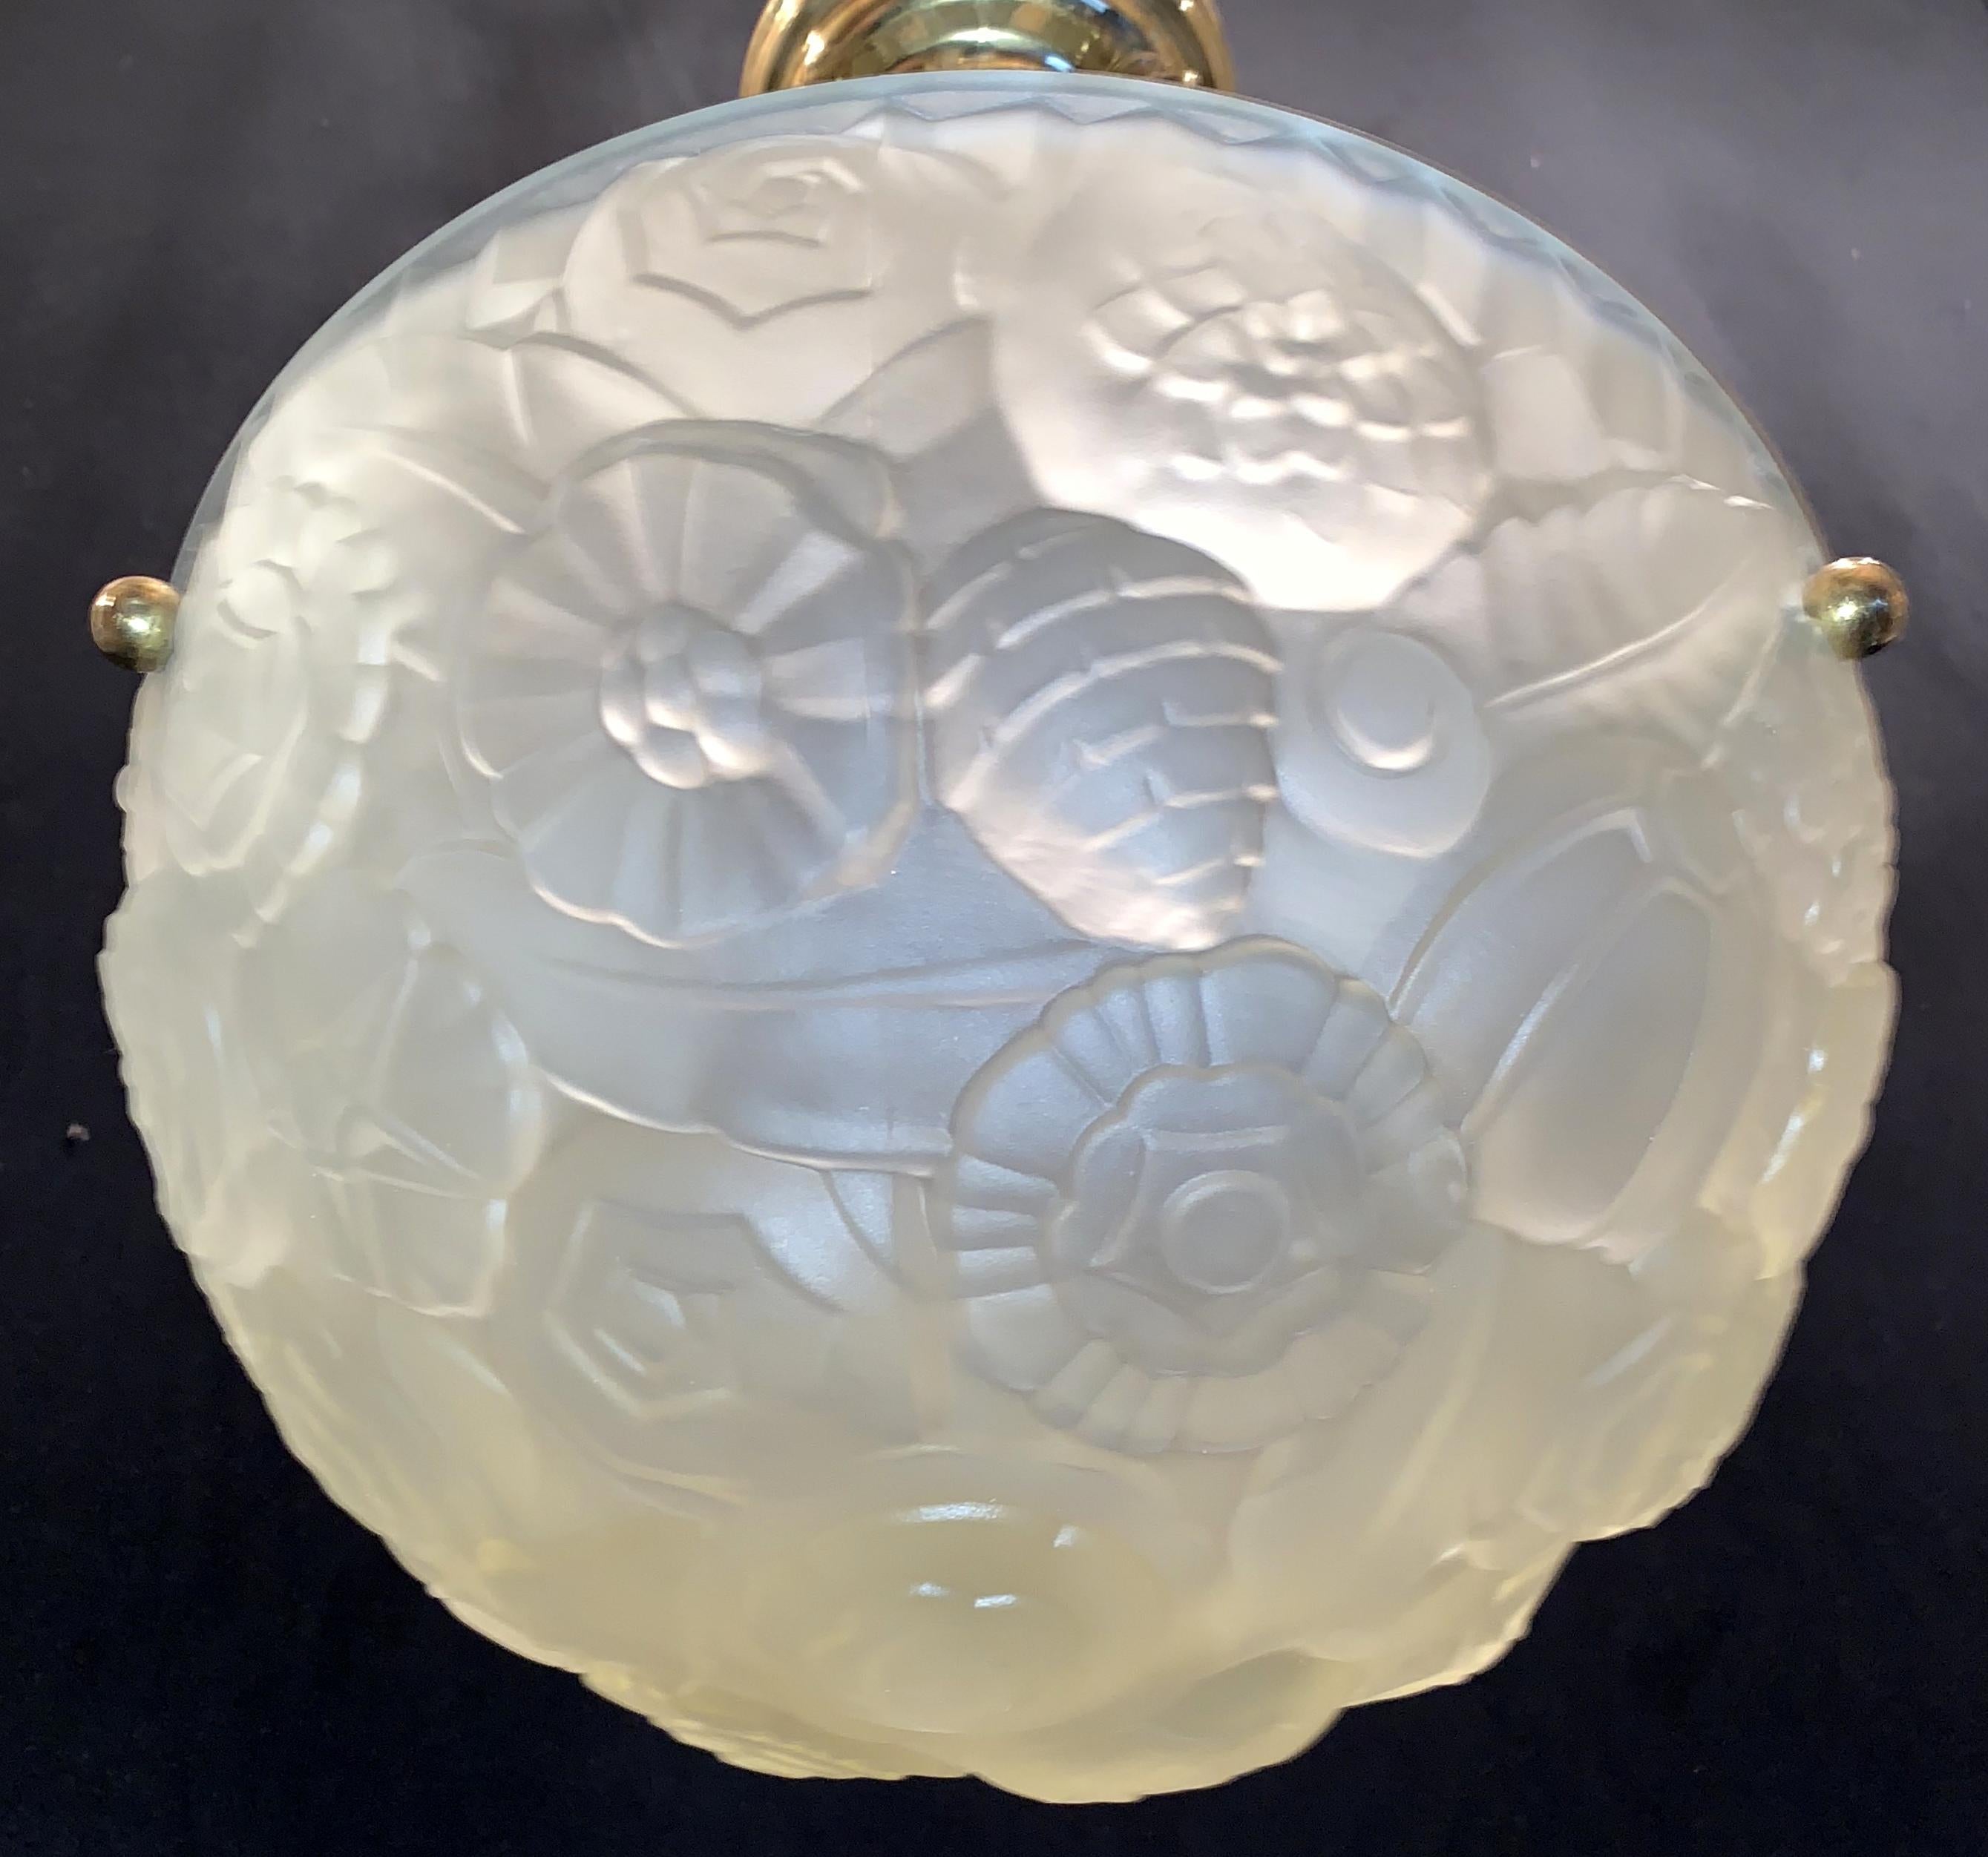 Un merveilleux Art Déco français givré jaune pâle design floral design en verre de laiton matériel lustre 3-light fixture dans la manière de Degué.